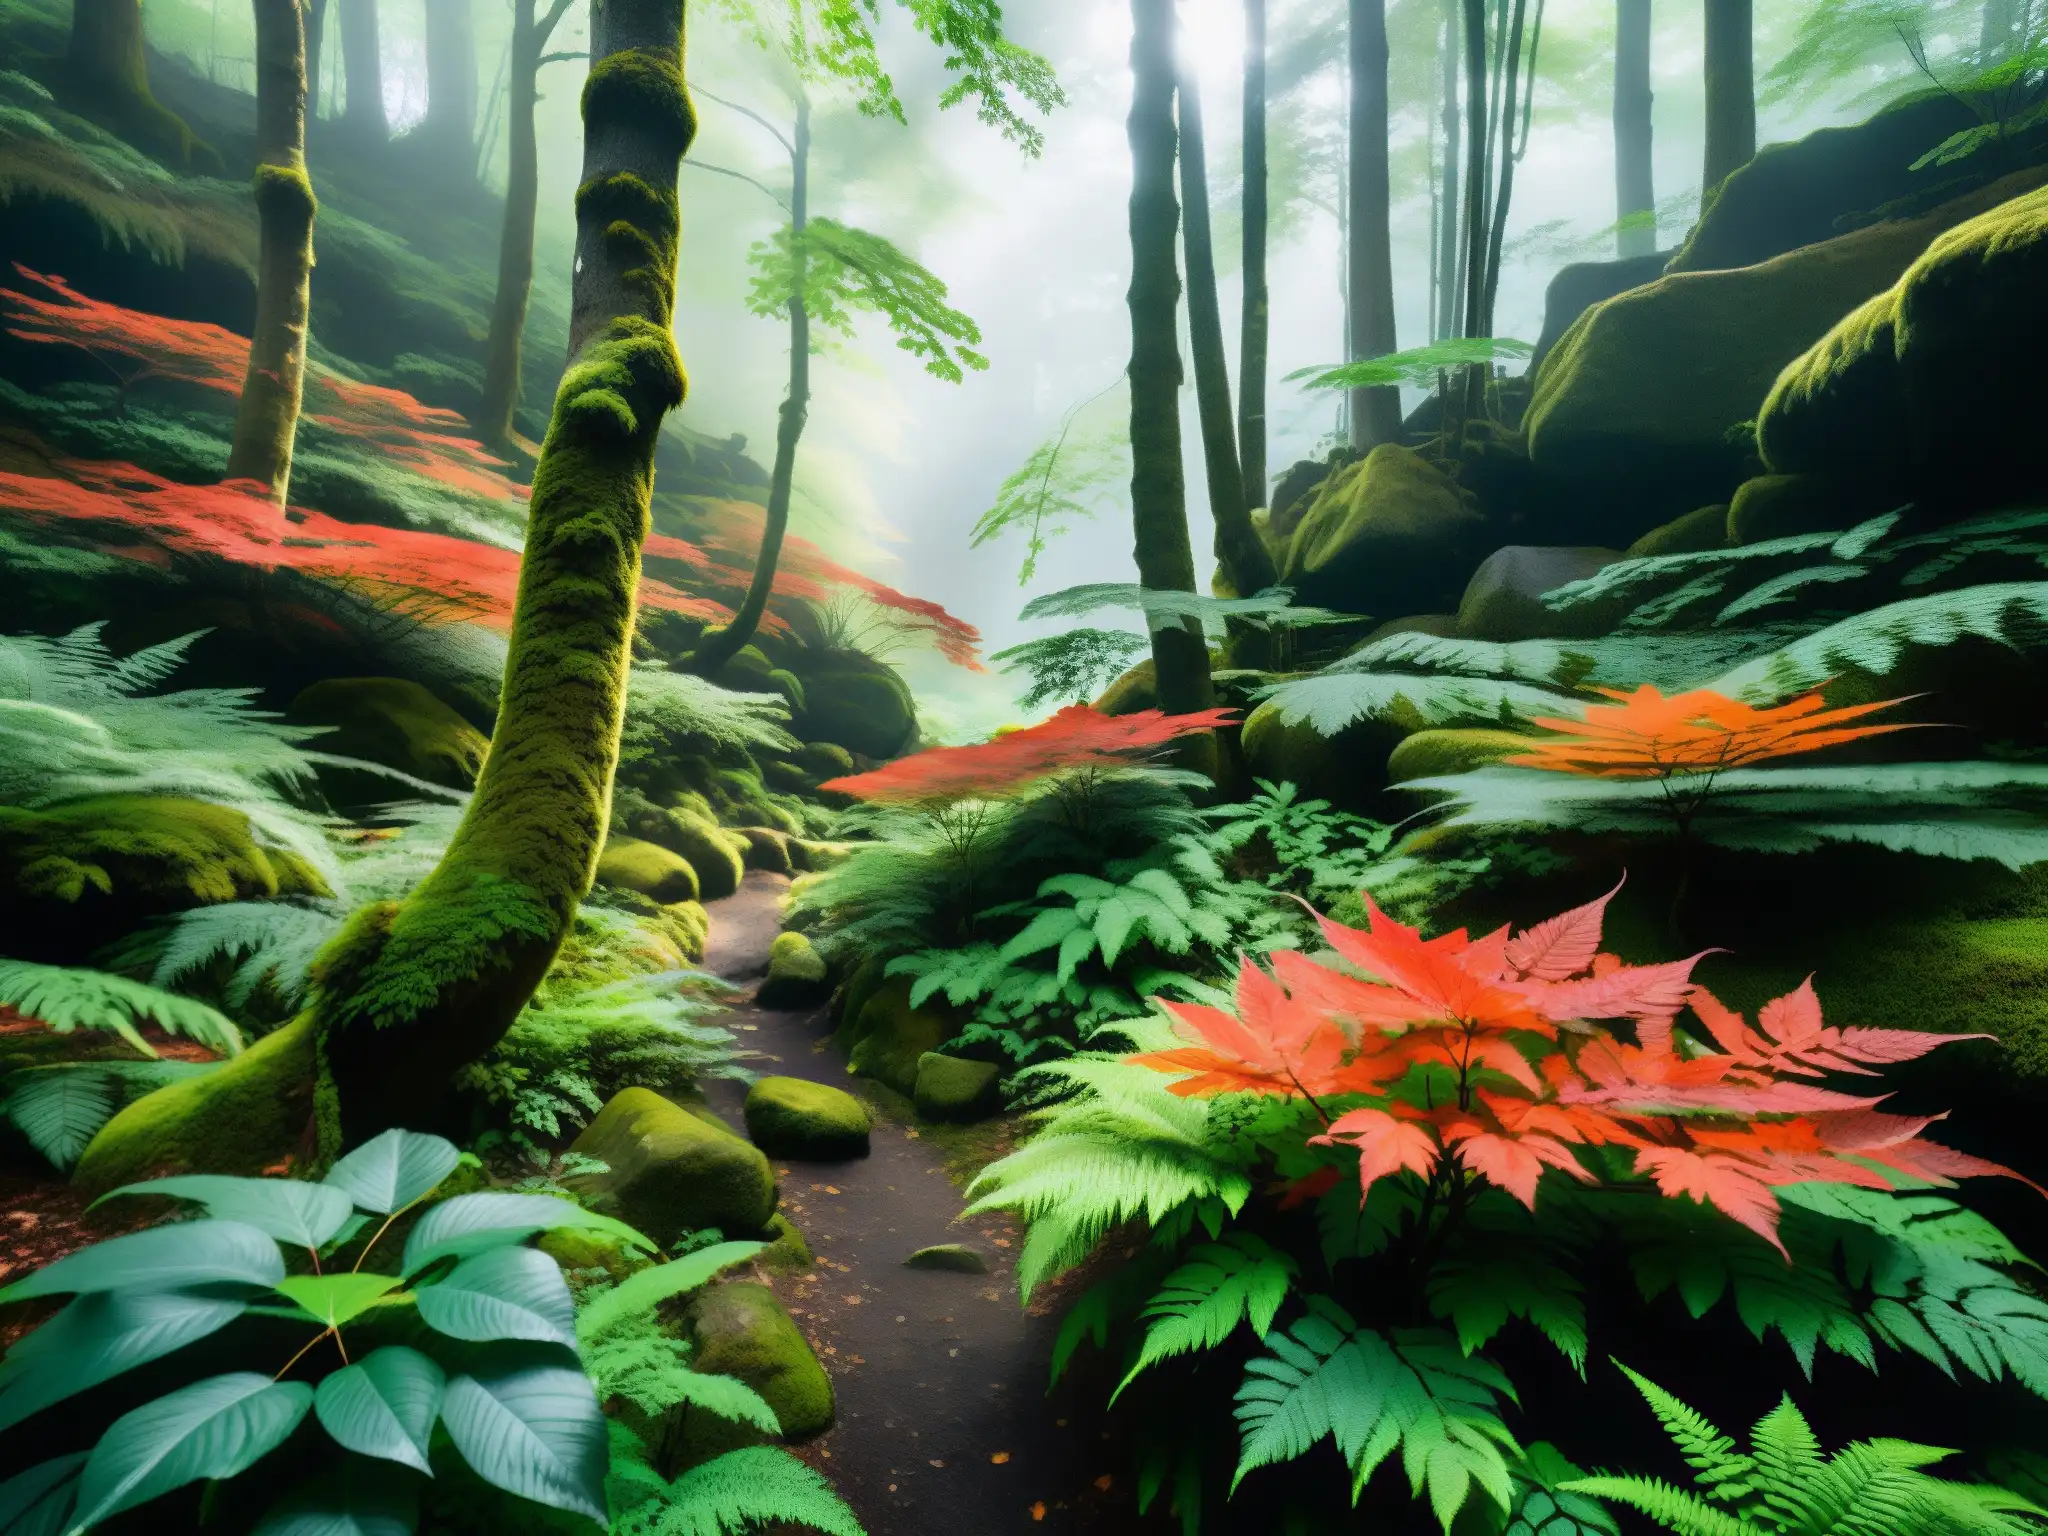 Espíritu Rojo en los Bosques Japoneses: Vibrante paisaje de bosque místico con árboles de arce rojo, luz del sol y sendero invitador